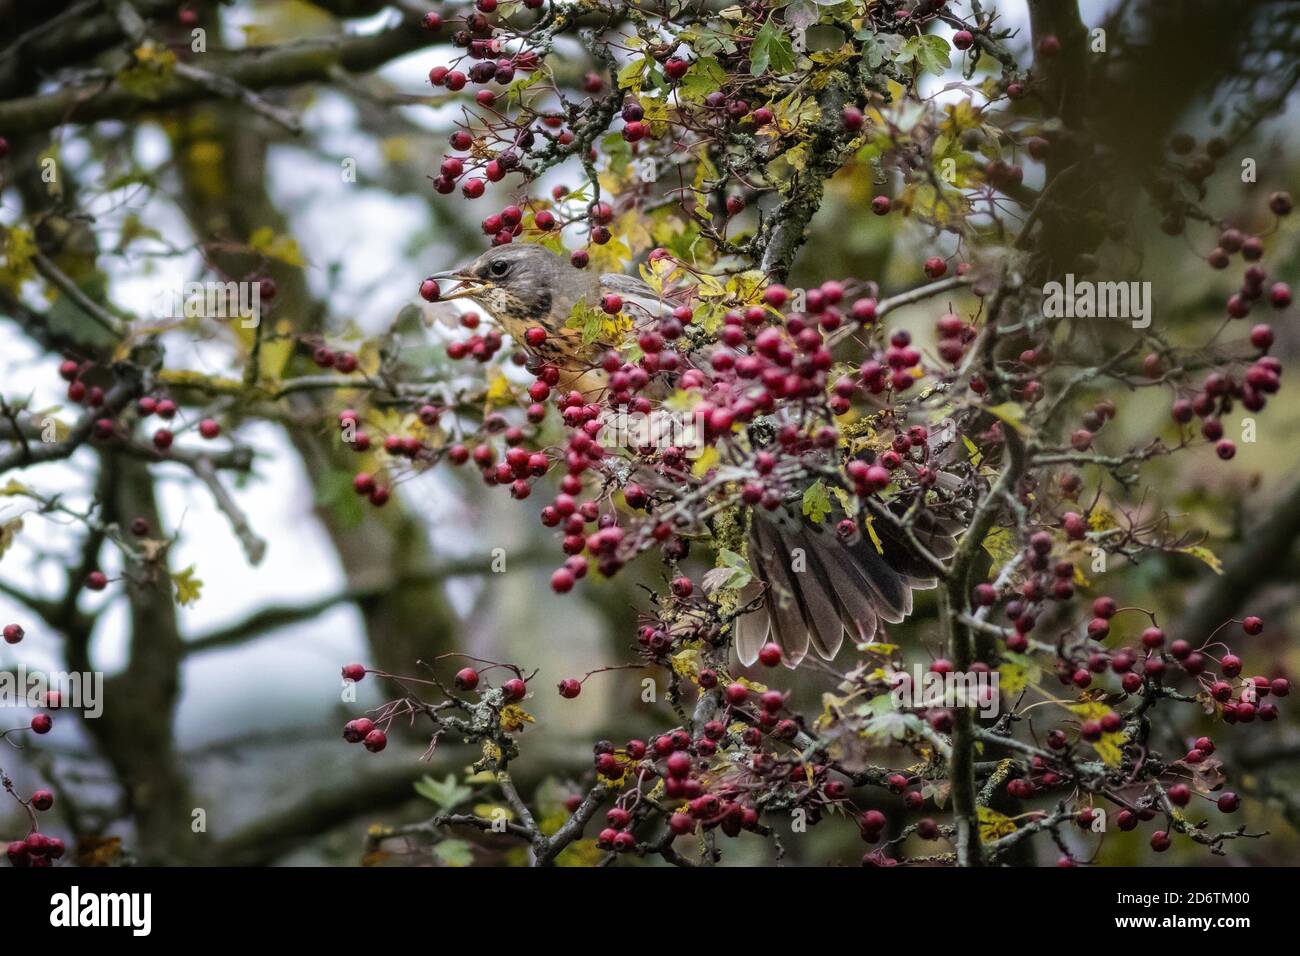 19 octobre 2020: UK Wildlife: Fieldfare (Turdus pilaris) commence une frénésie alimentaire dans les arbres de l'aubépine à Wharfedale - un d'un grand troupeau vient d'arriver de leur voyage de migration. West Yorkshire. Rebecca Cole/Alamy News (c) Banque D'Images